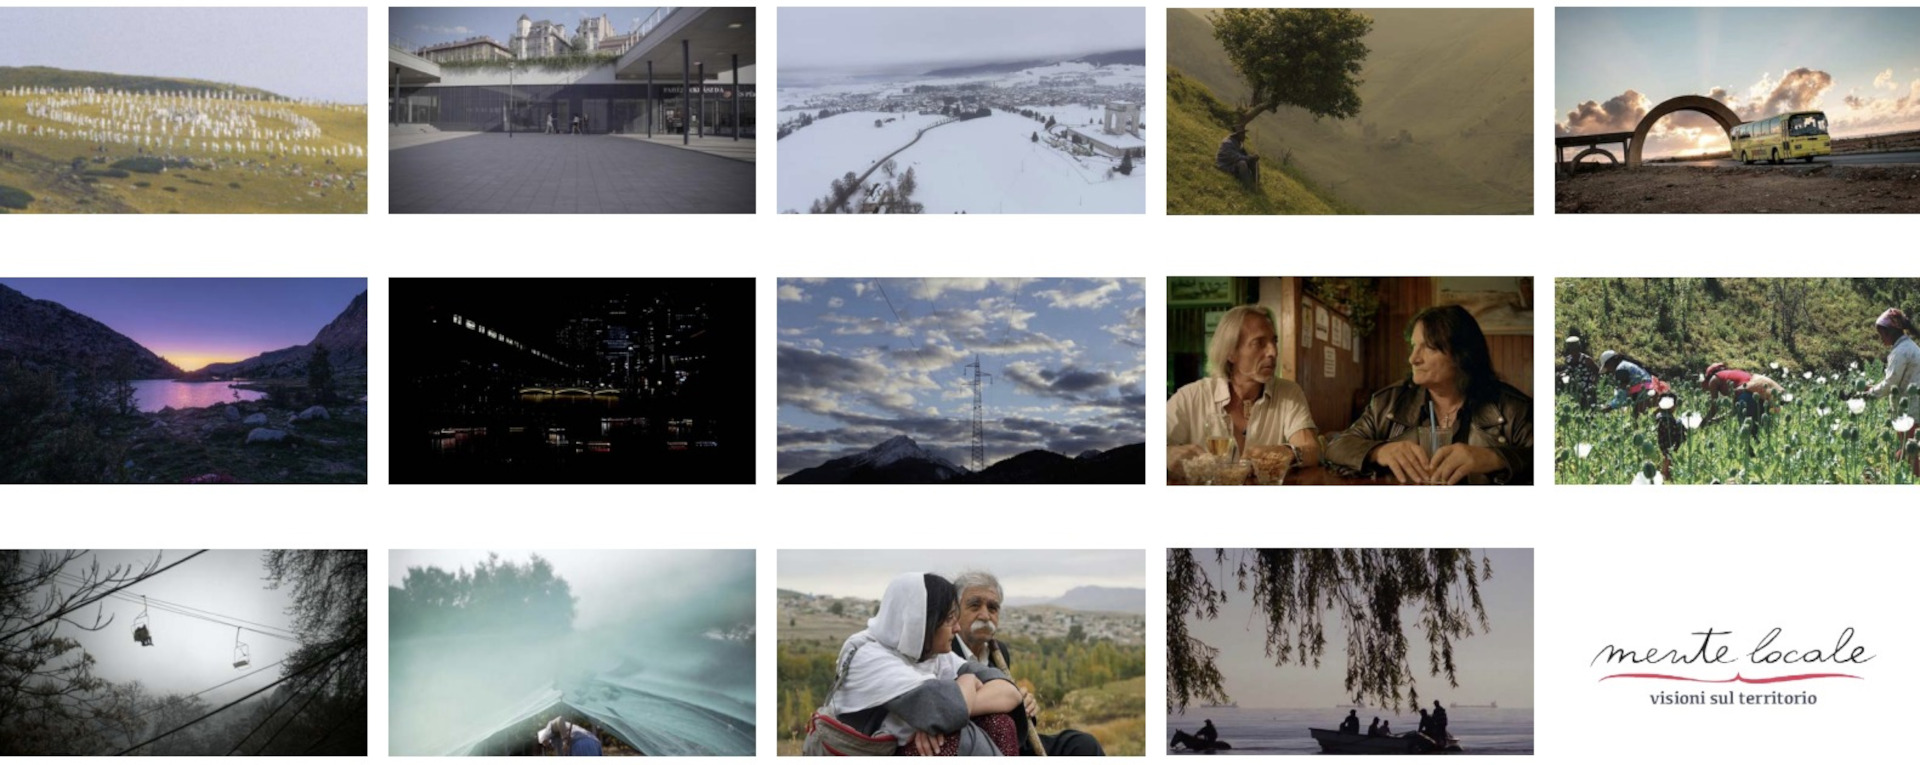 Cinema documentario e racconto del territorio, torna il festival Mente Locale - Visioni sul territorio